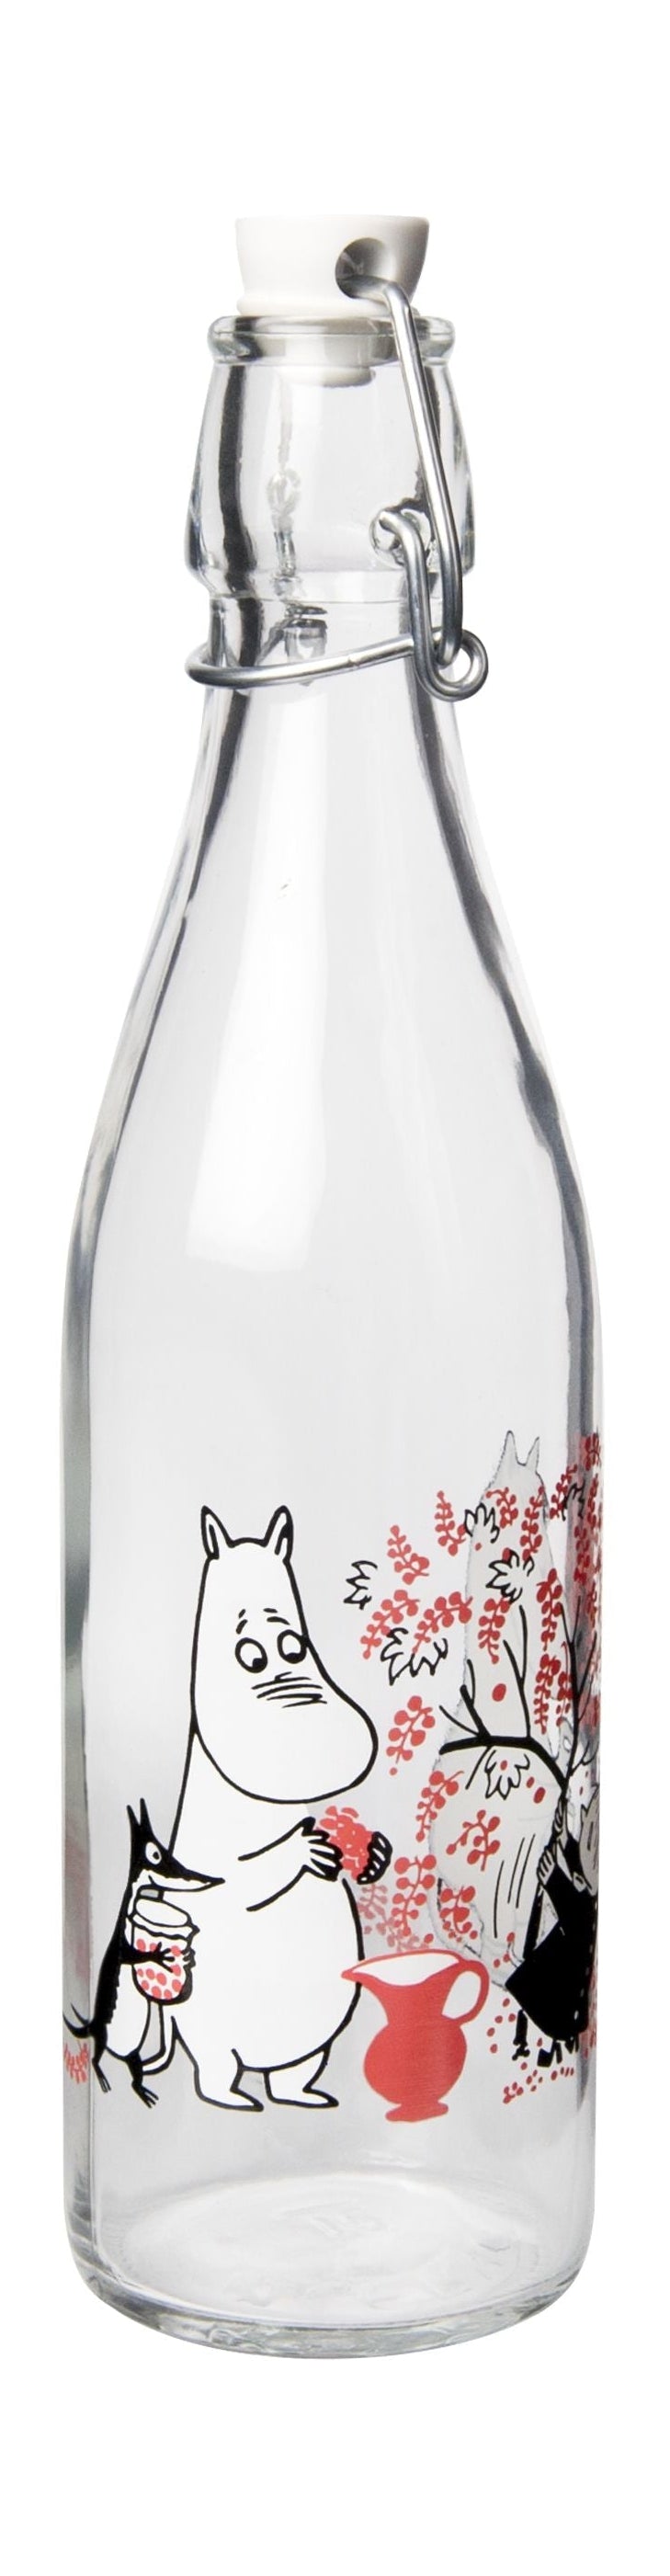 Muurla Moomin glazen fles, bessen